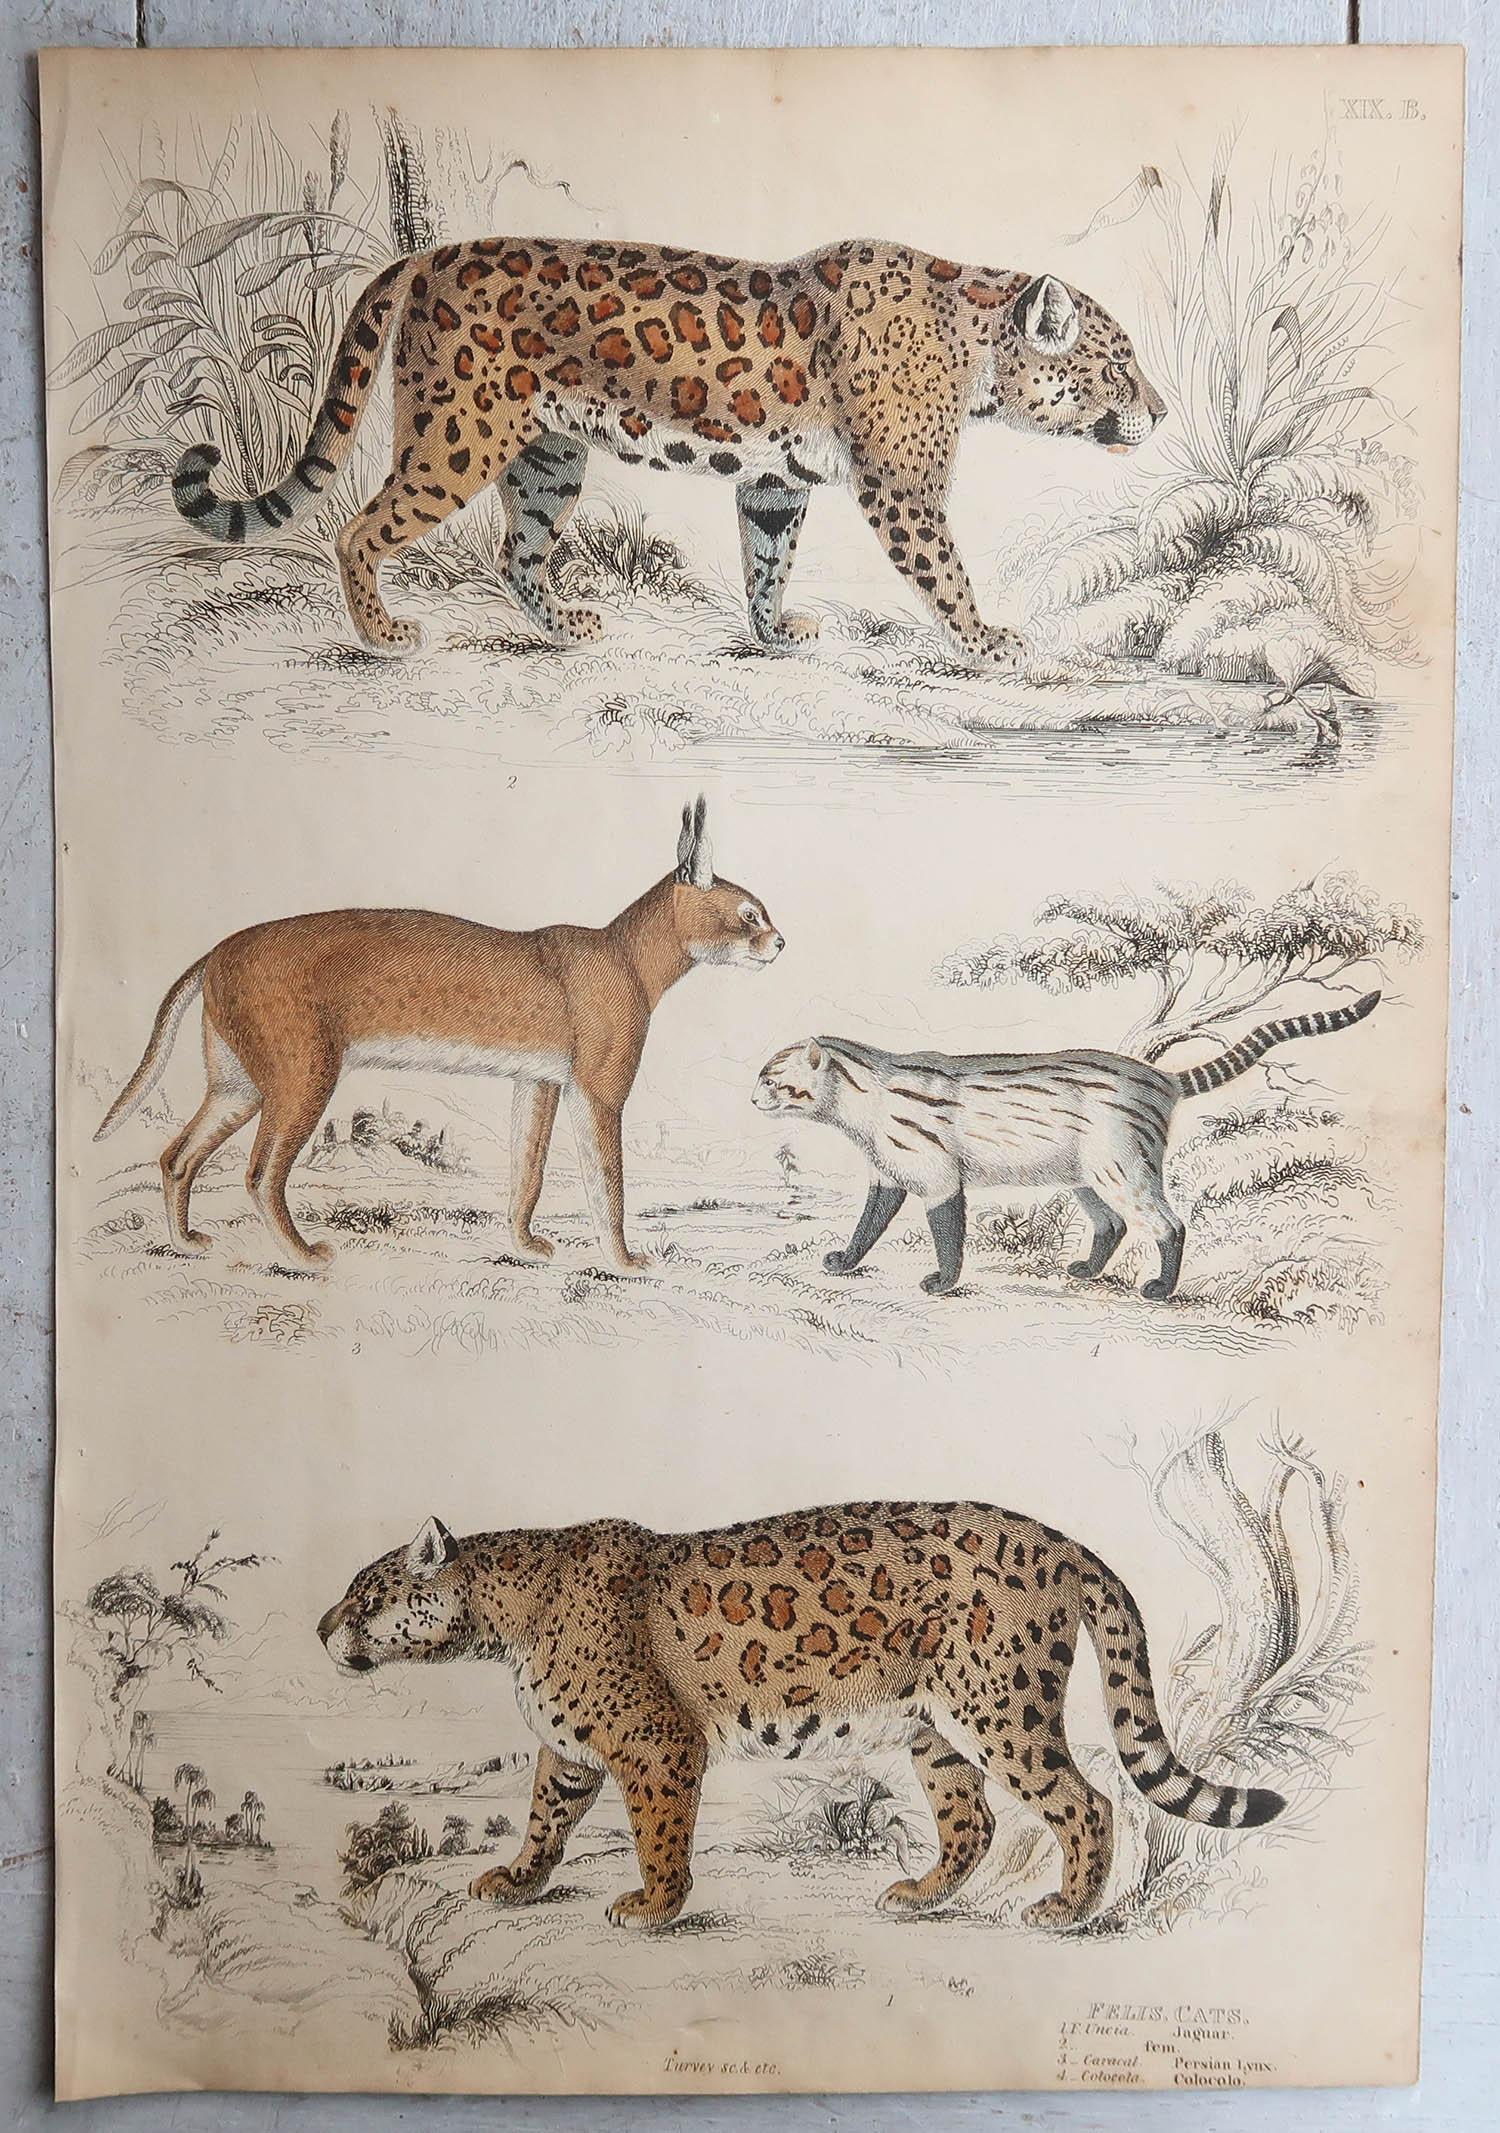 Tolle Bilder von Katzen

Ungerahmt. So haben Sie die Möglichkeit, Ihre eigene Auswahl an Rahmen zu treffen.

Lithographien nach Cpt. Brown, Gilpin und Edwards mit Original-Handkolorit.

Veröffentlicht um 1835

Kostenloser Versand.




